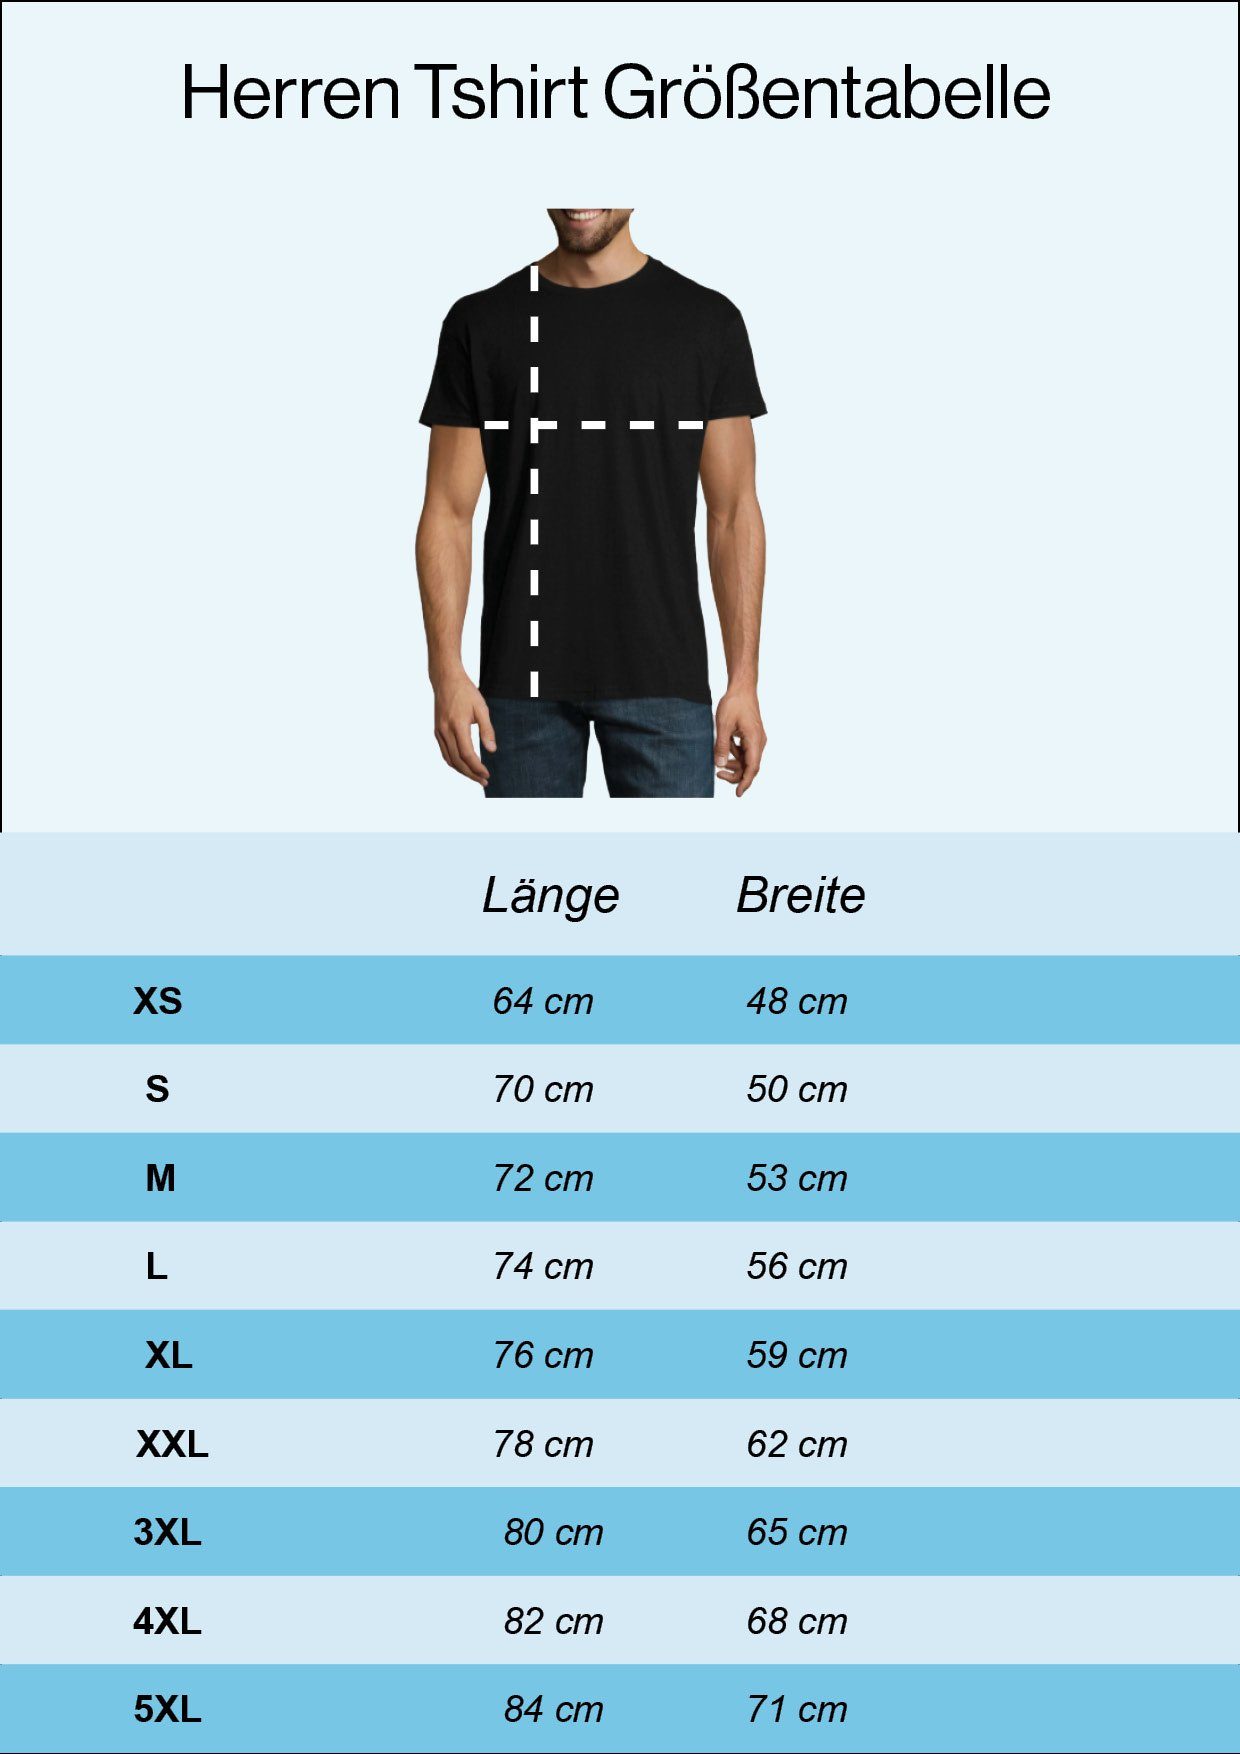 Immer Noch 40 Gutaussehend Youth Designz lustigem Herren Und Print Shirt Spruch T-Shirt Navyblau mit